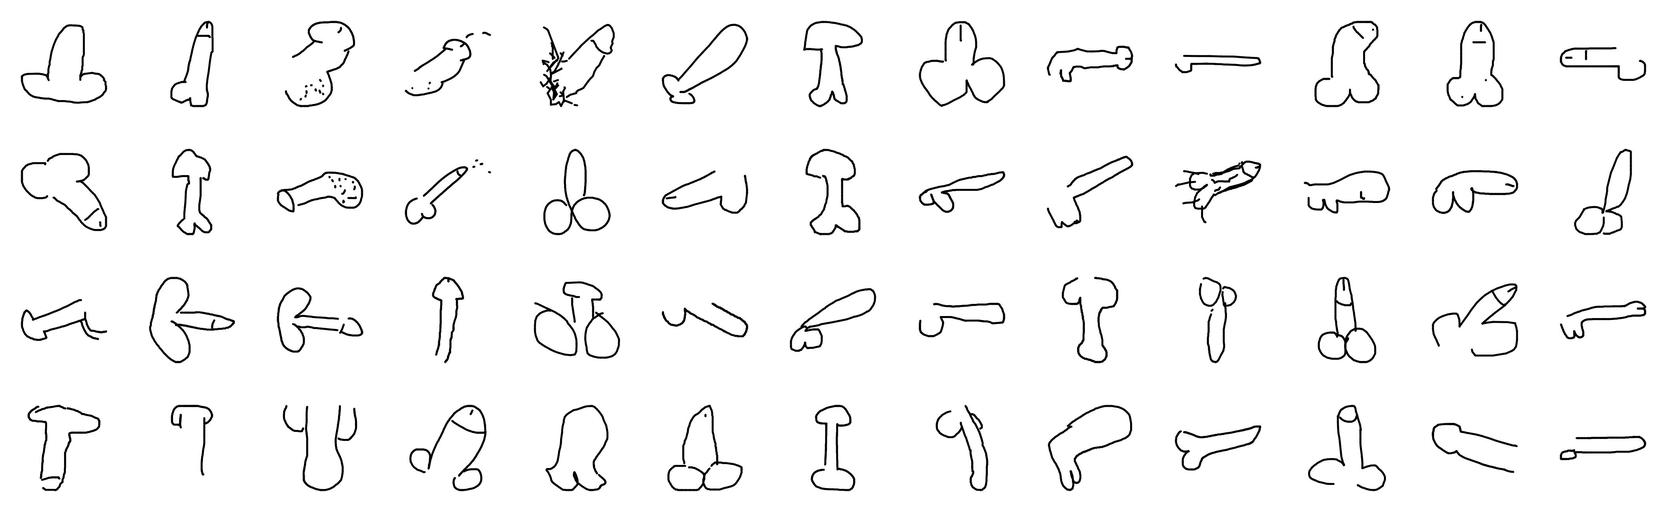 *Do Not Draw a Penis*. Ensemble de dessins numériques de pénis